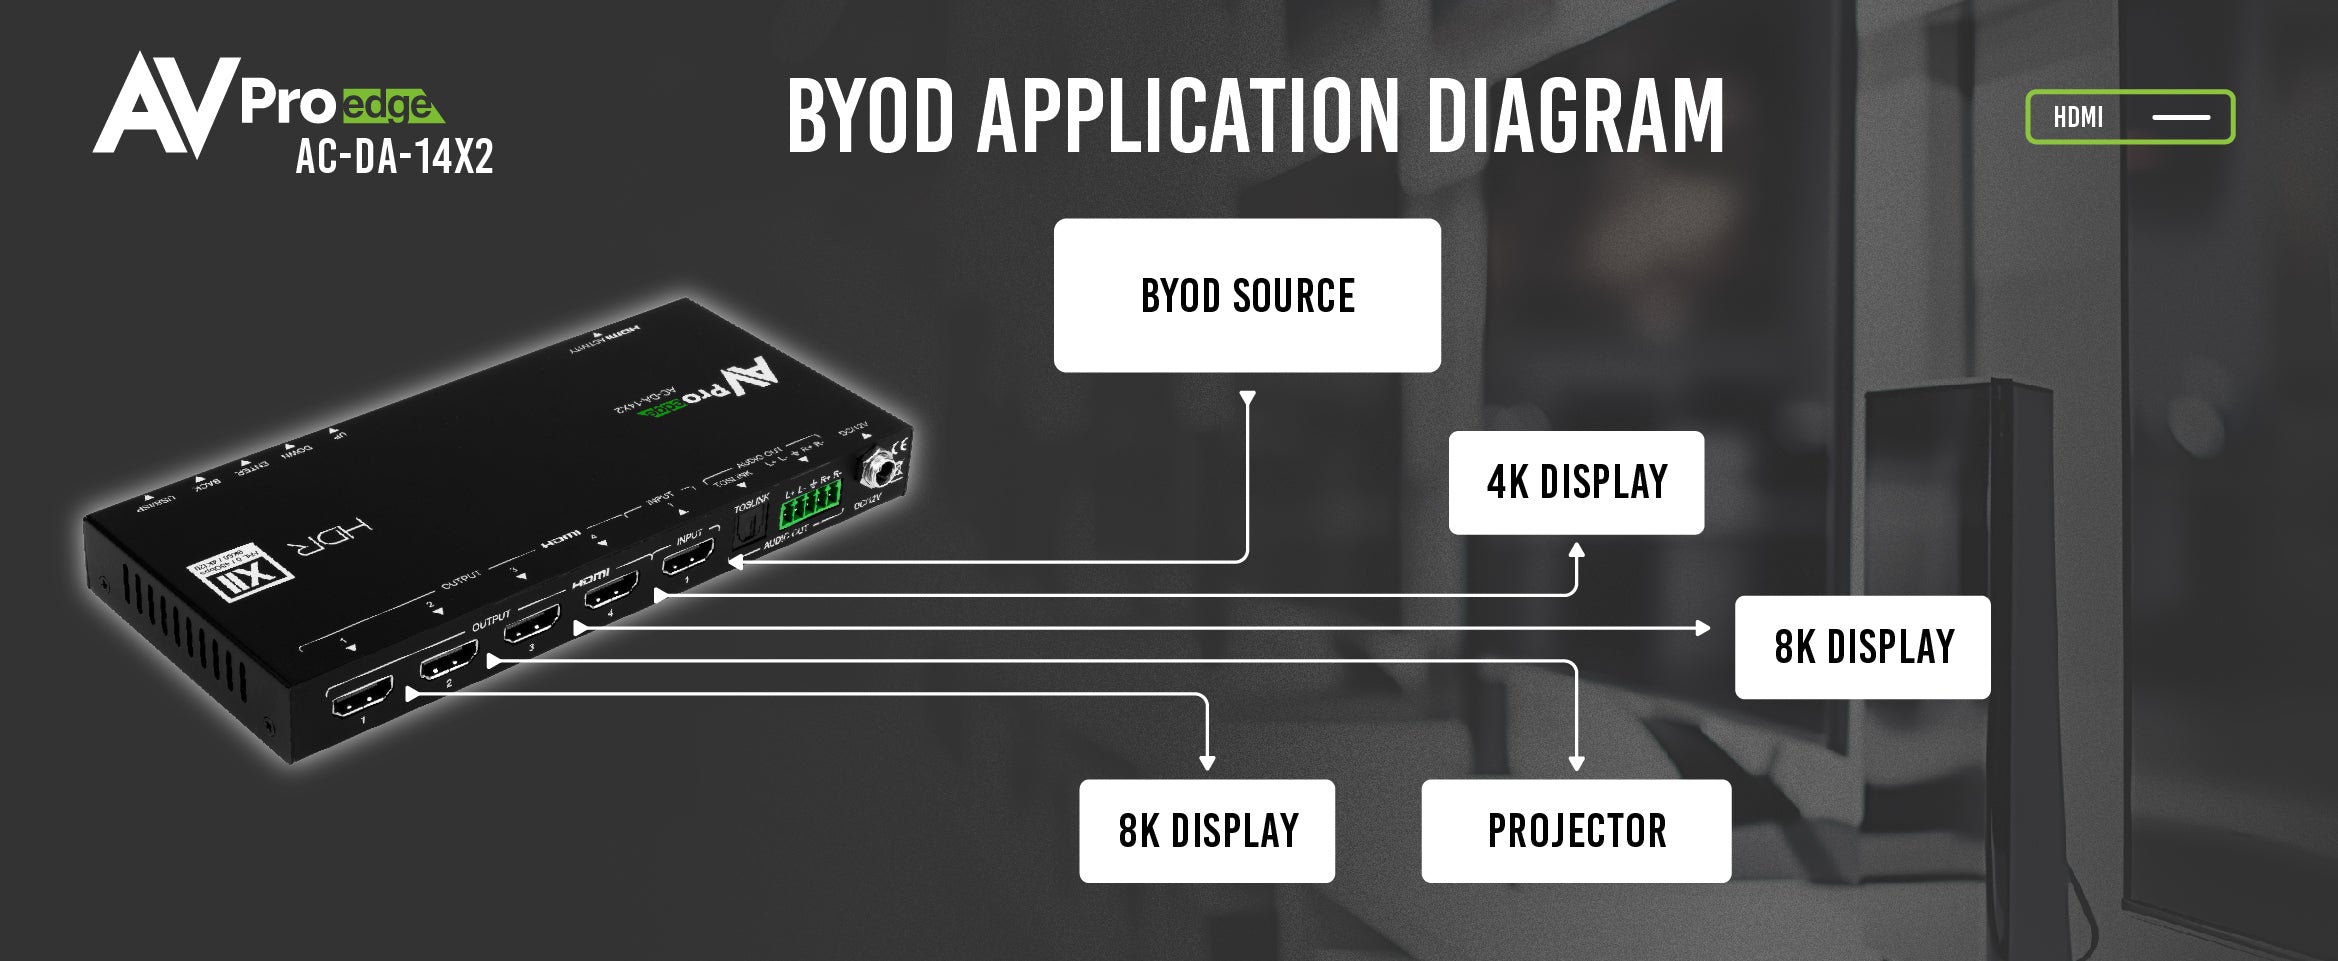 AC-DA-14X2_BYOD_Application_Diagram-01